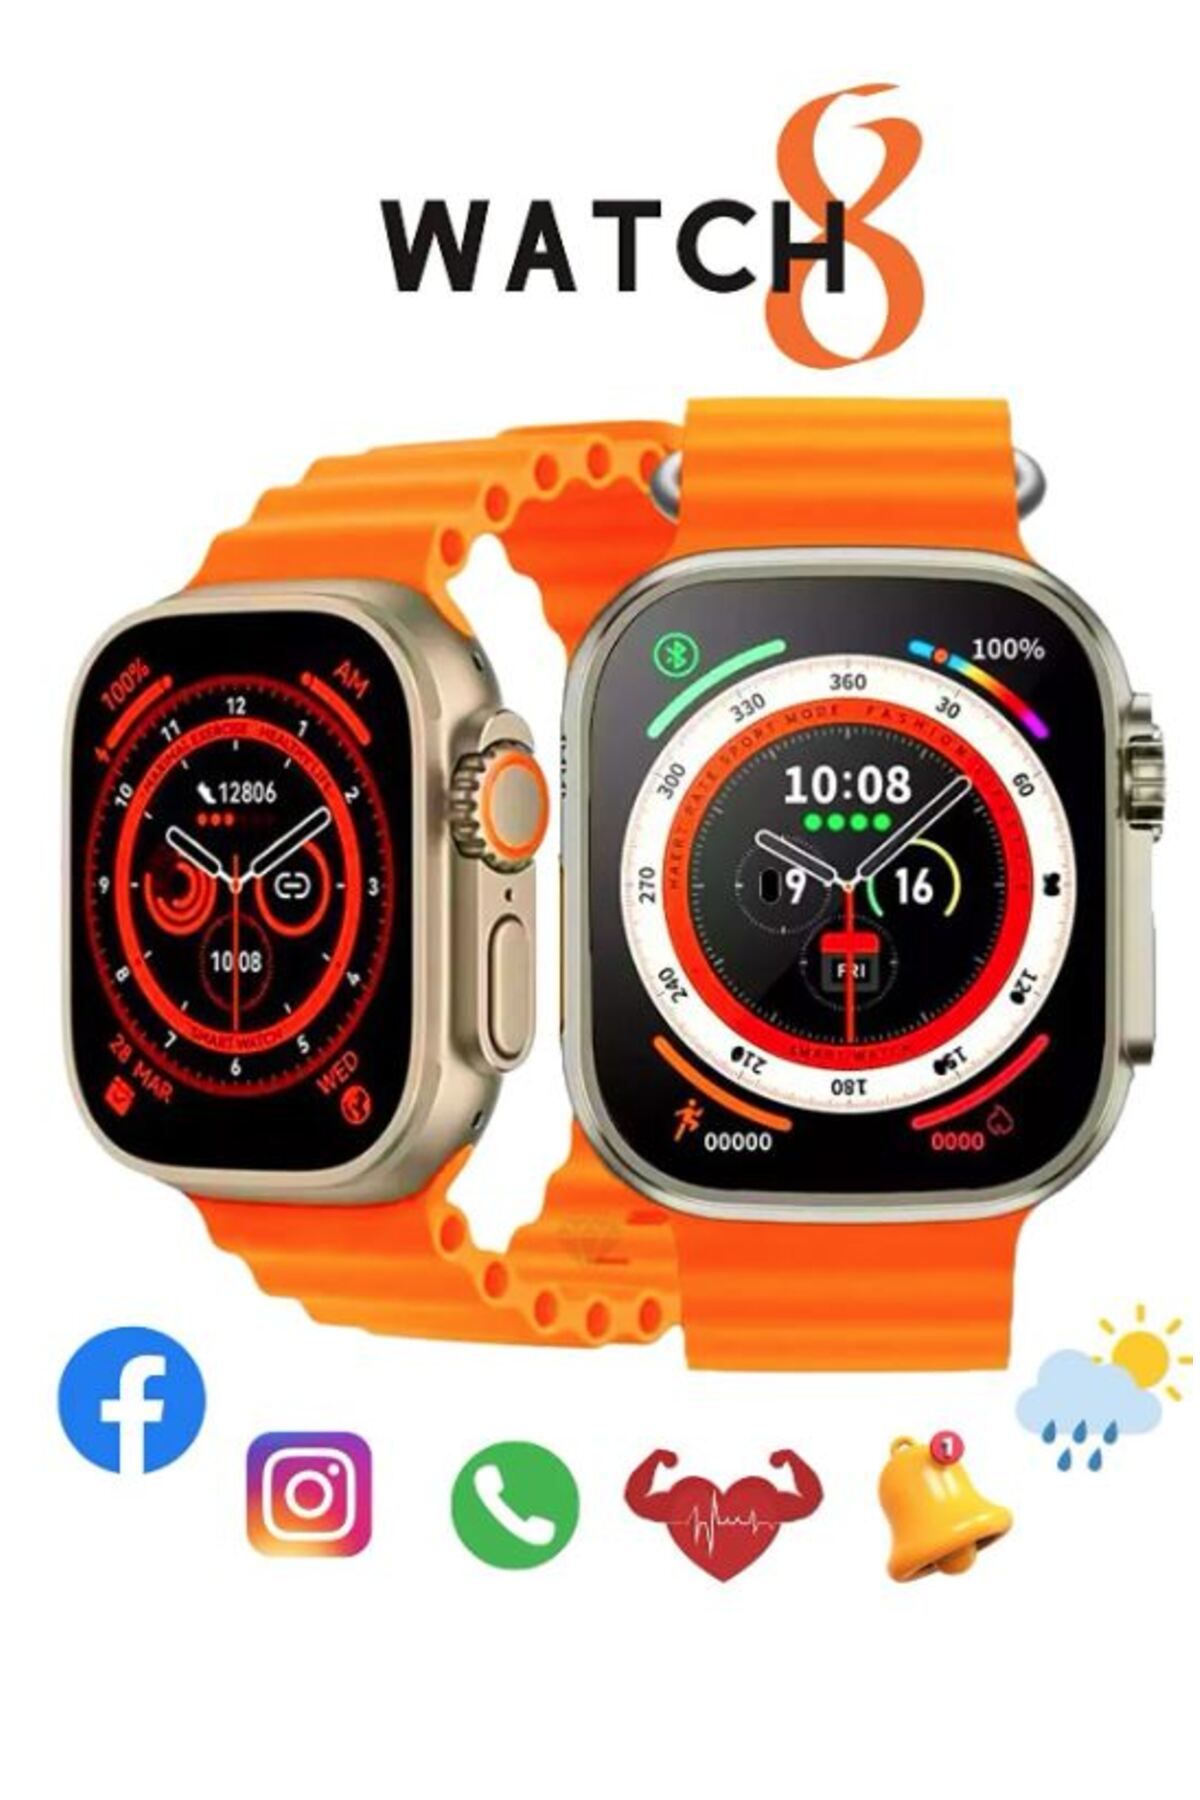 Favors Watch 8 Ultra Turuncu Akıllı Saat Arama Yapma, Sensörlü, Spor Mod, Bildirim, Türkçe Smart Watch